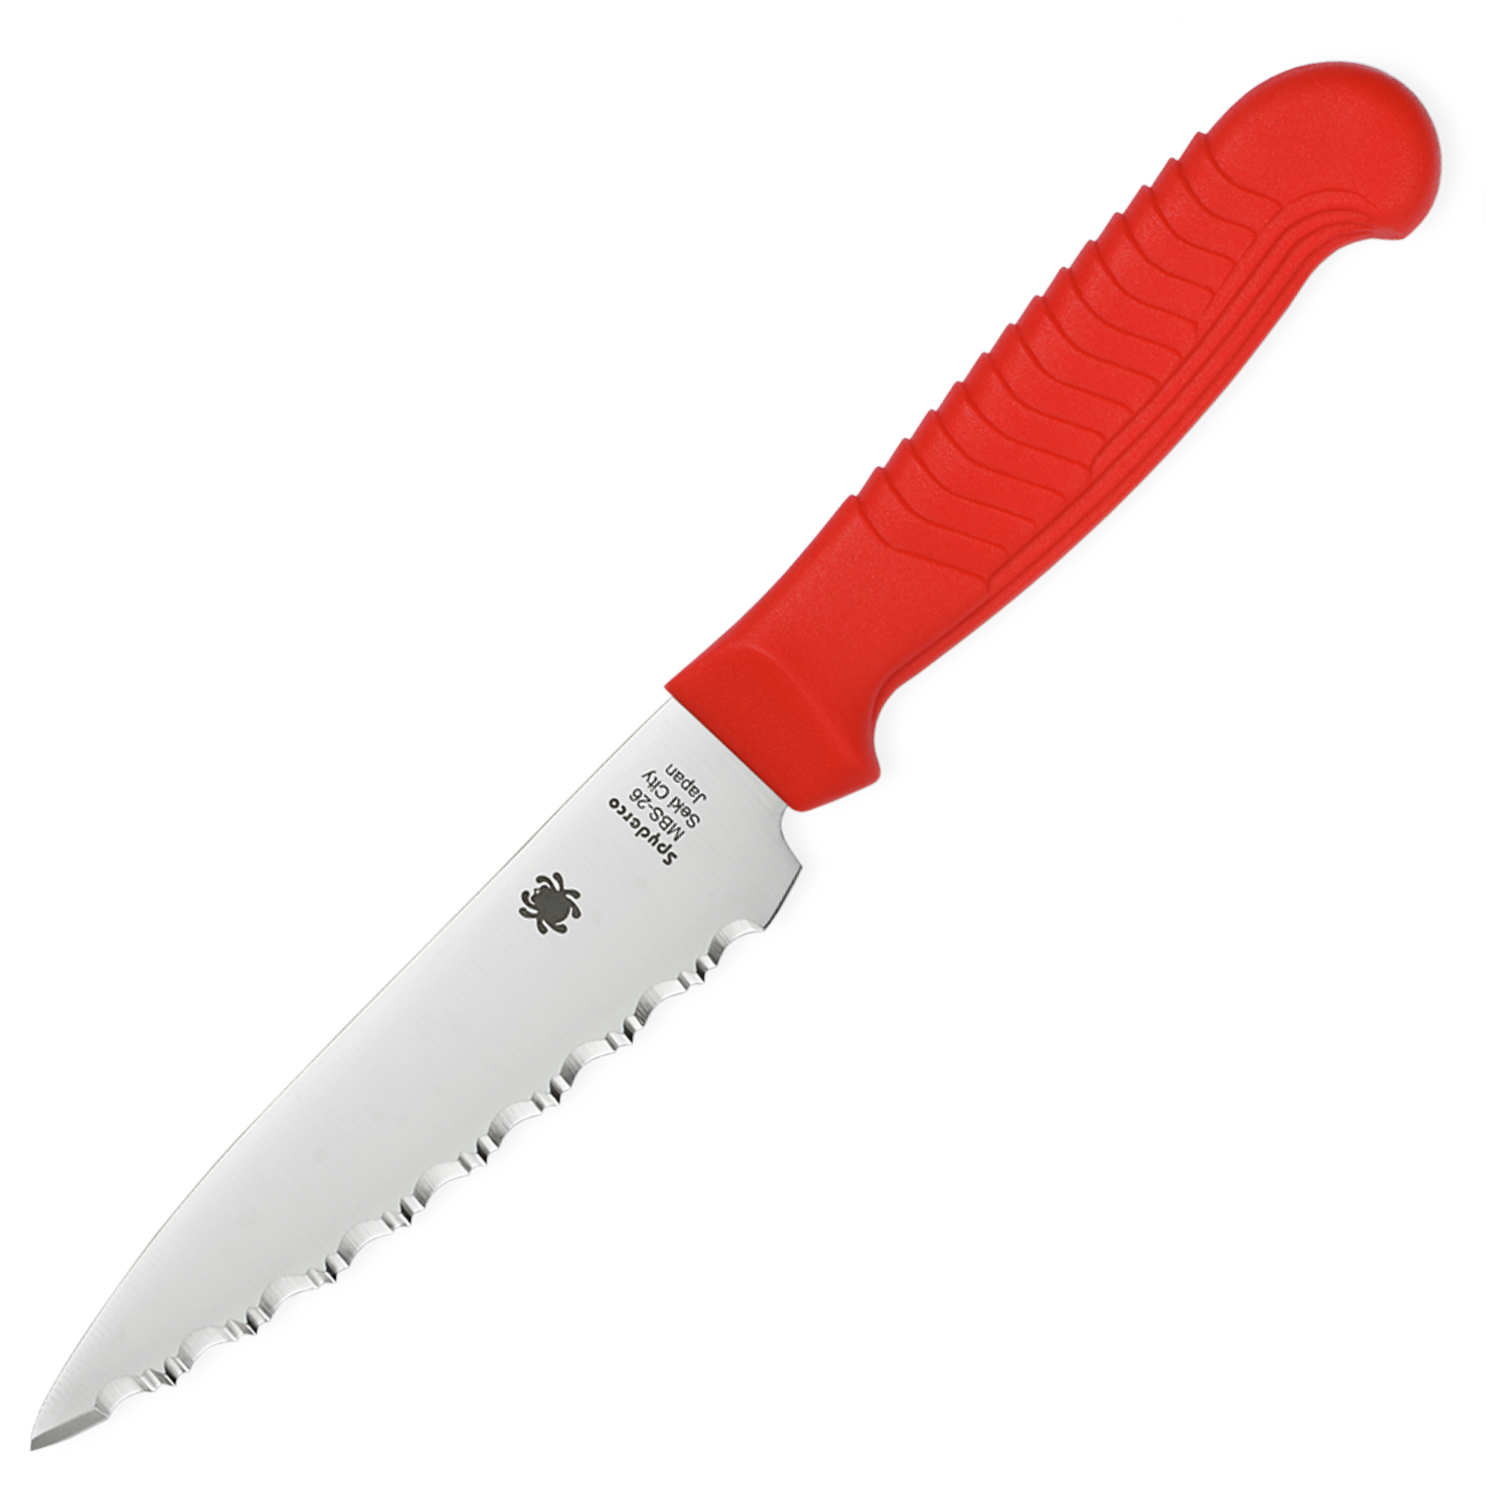 Нож кухонный универсальный Spyderco Utility Knife K05SRD, сталь MBS-26 Serrated 11.4 см, рукоять полипропилен, красный